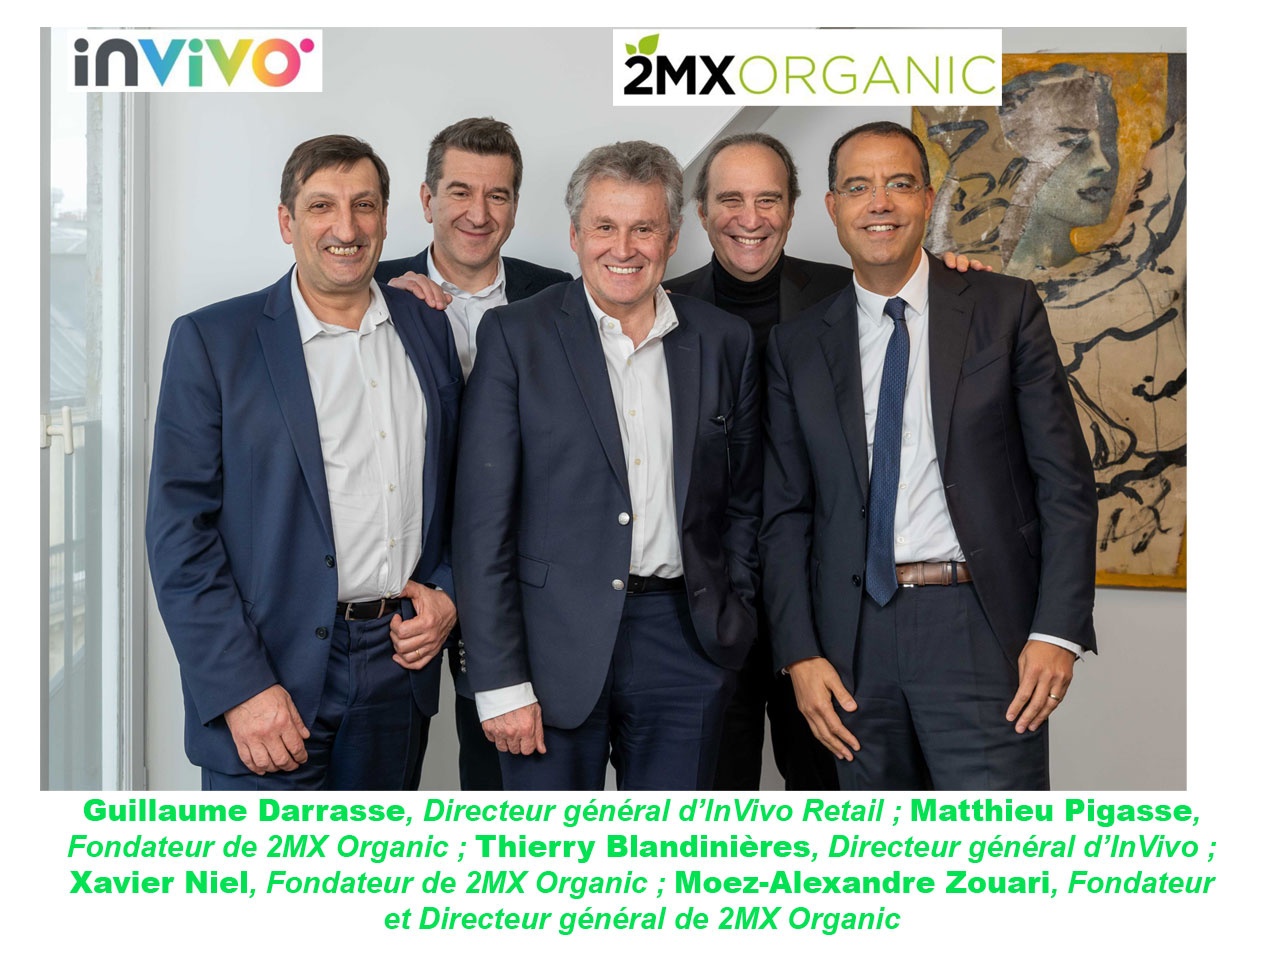 InVivo et 2MX Organic s’associent pour créer un leader de la distribution responsable